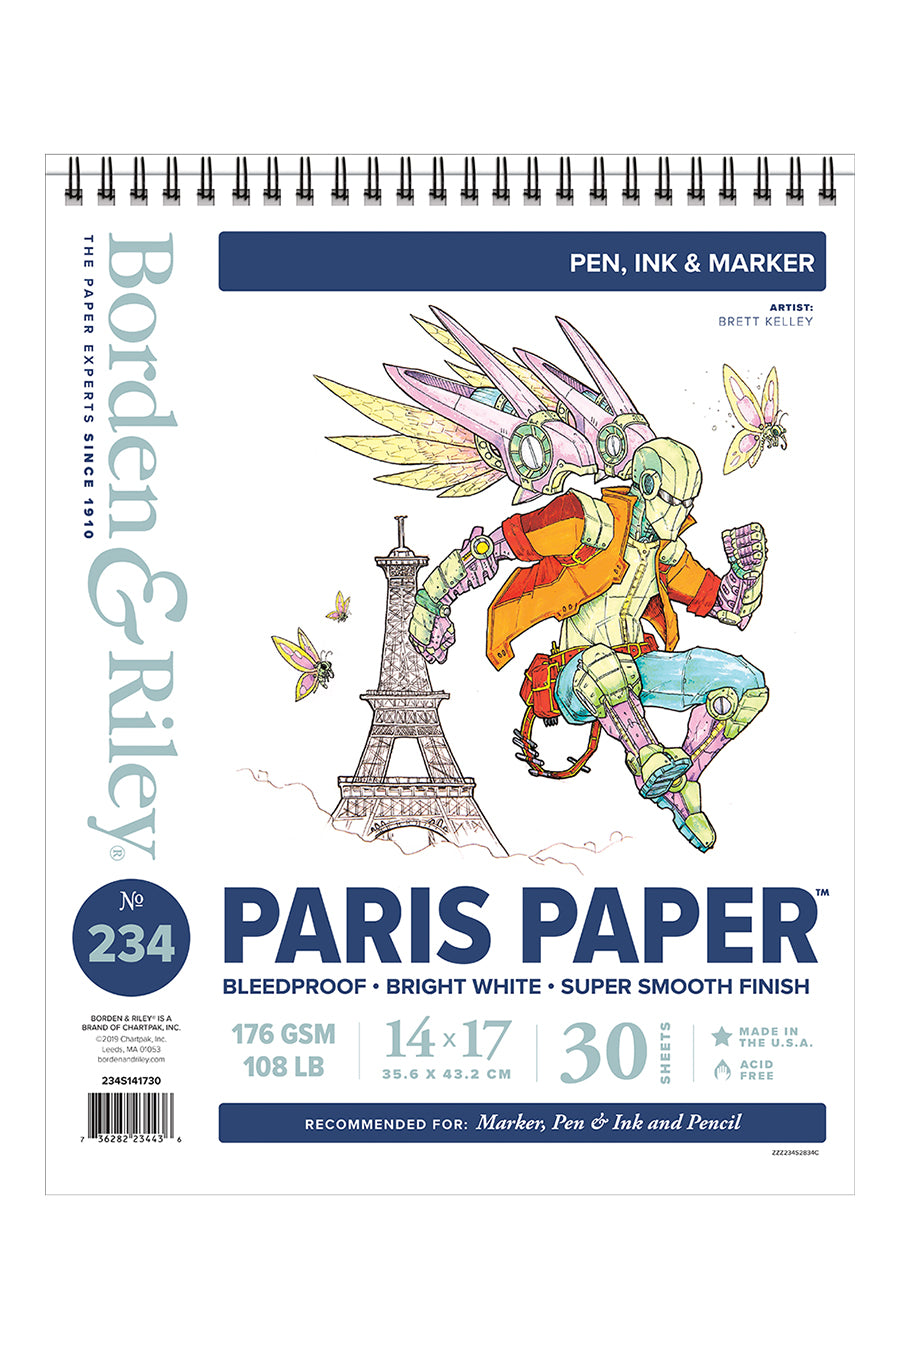 234 Paris Paper, 14x17 Spiral Pad